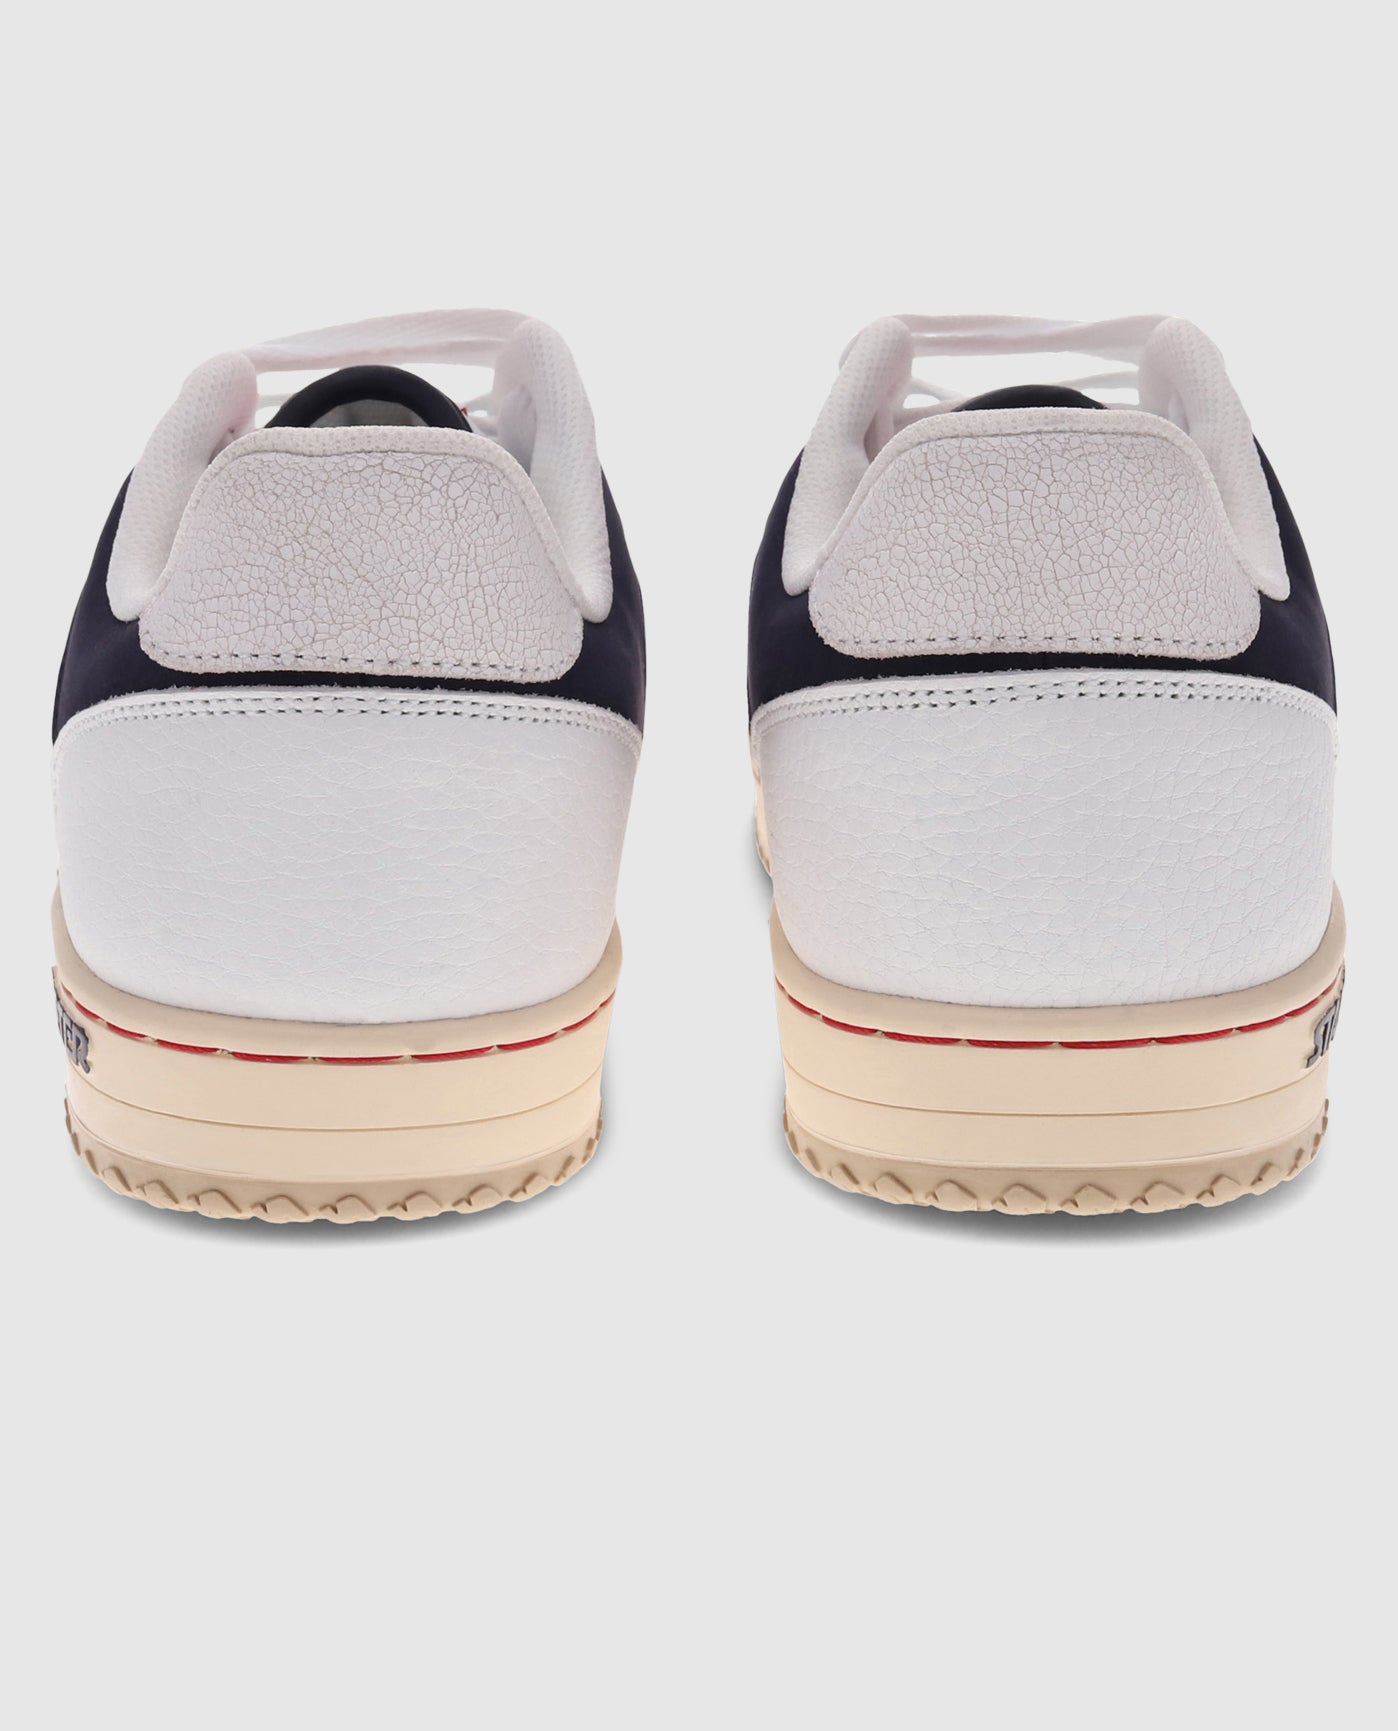 Back of Starter LFS 1 Vintage White Sneaker Pair | White